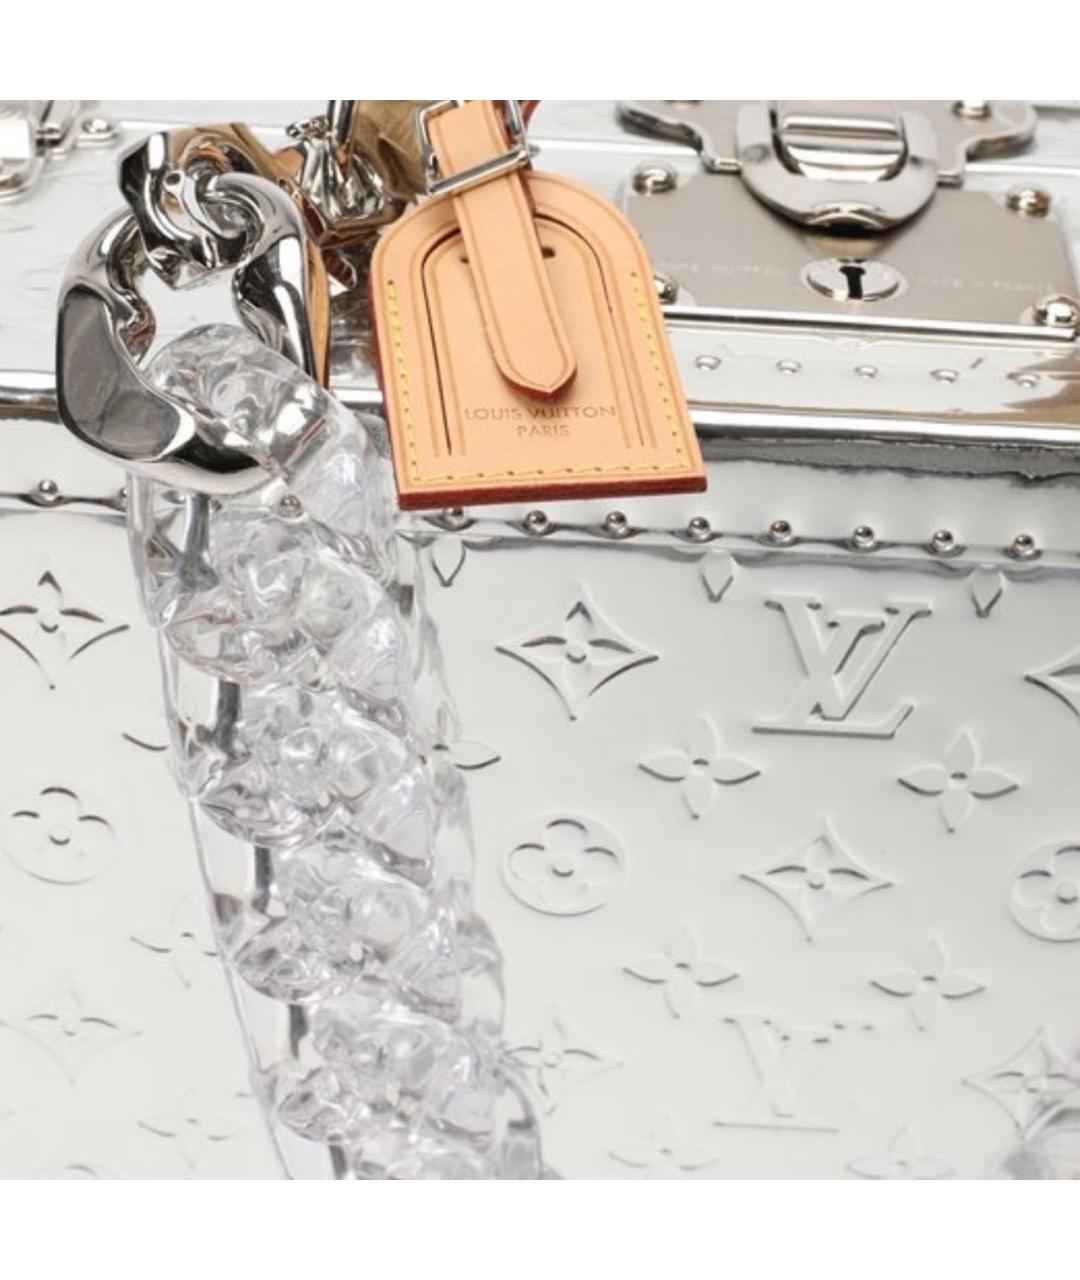 LOUIS VUITTON PRE-OWNED Серебрянный чемодан из лакированной кожи, фото 4